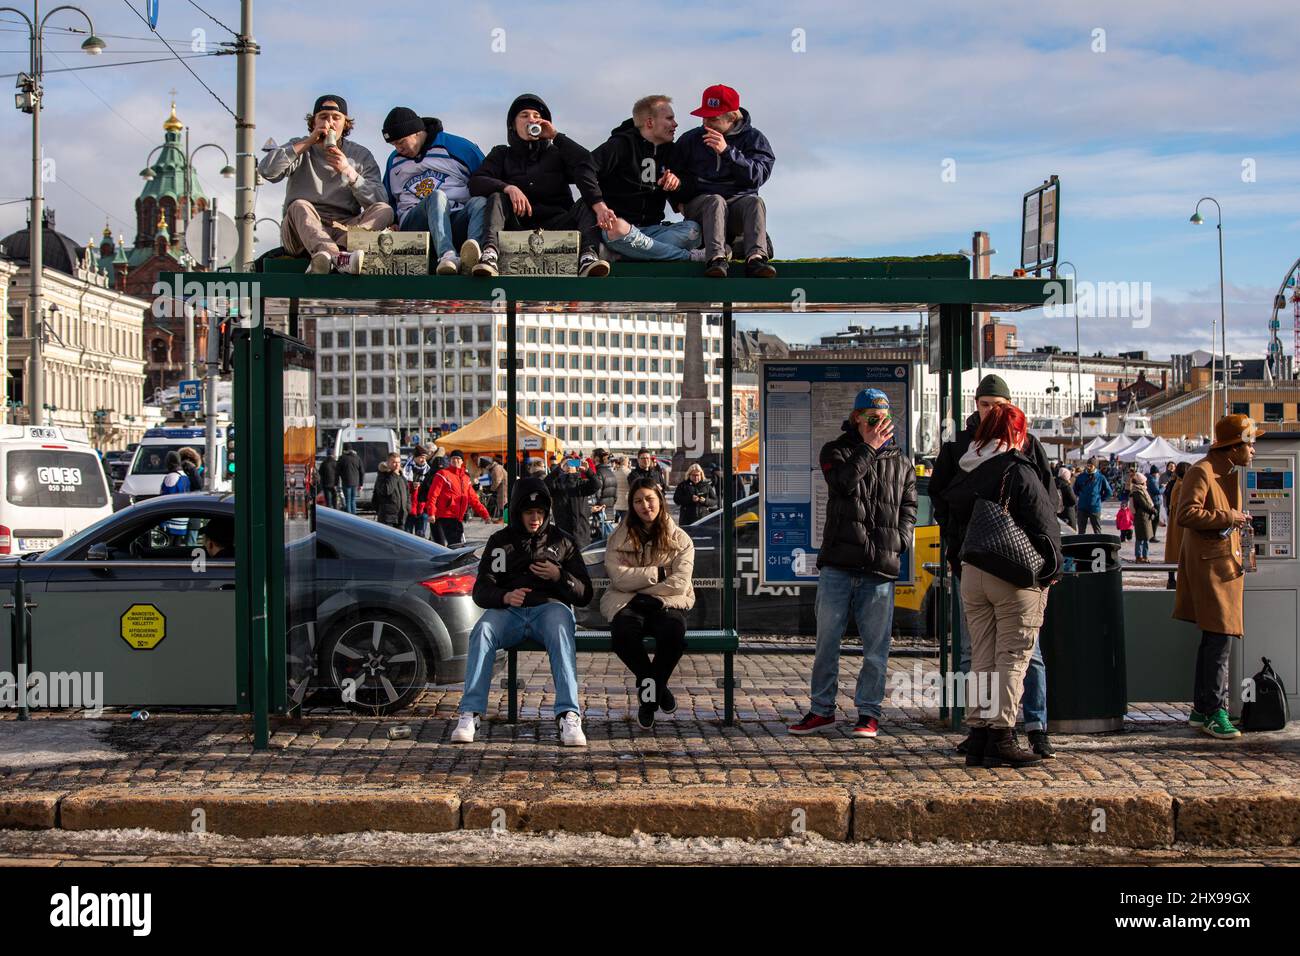 Les jeunes célèbrent la médaille d'or du hockey olympique en s'asseyant sur le toit d'un arrêt de tramway et en buvant de la bière à Helsinki, en Finlande Banque D'Images